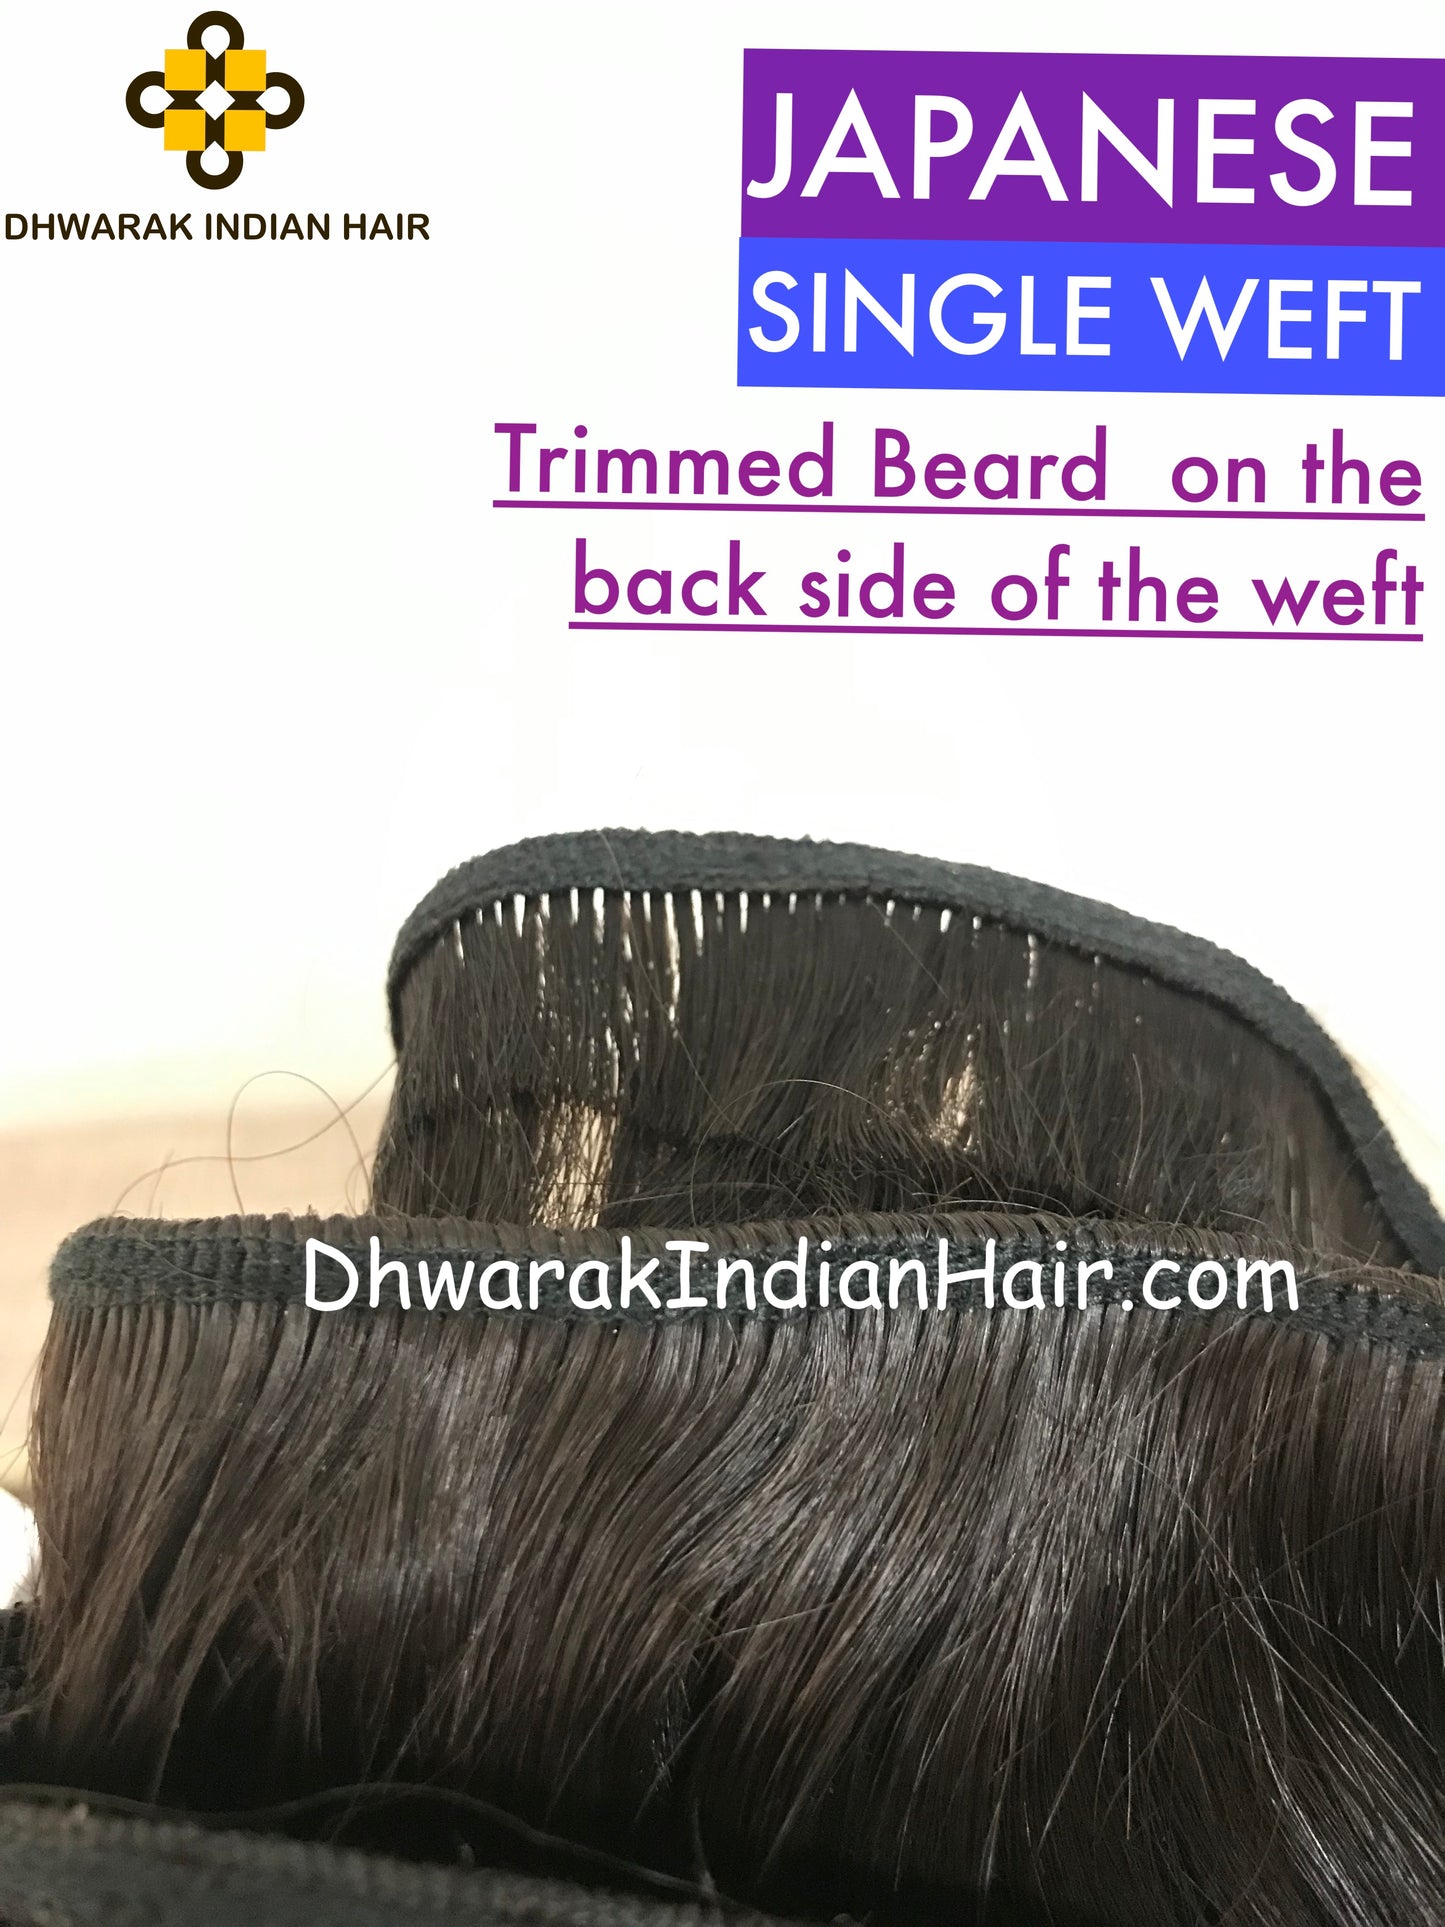 Virgin hair extensions-Raw Indian Hair- temple hair- wholesale hair vendors - raw hair